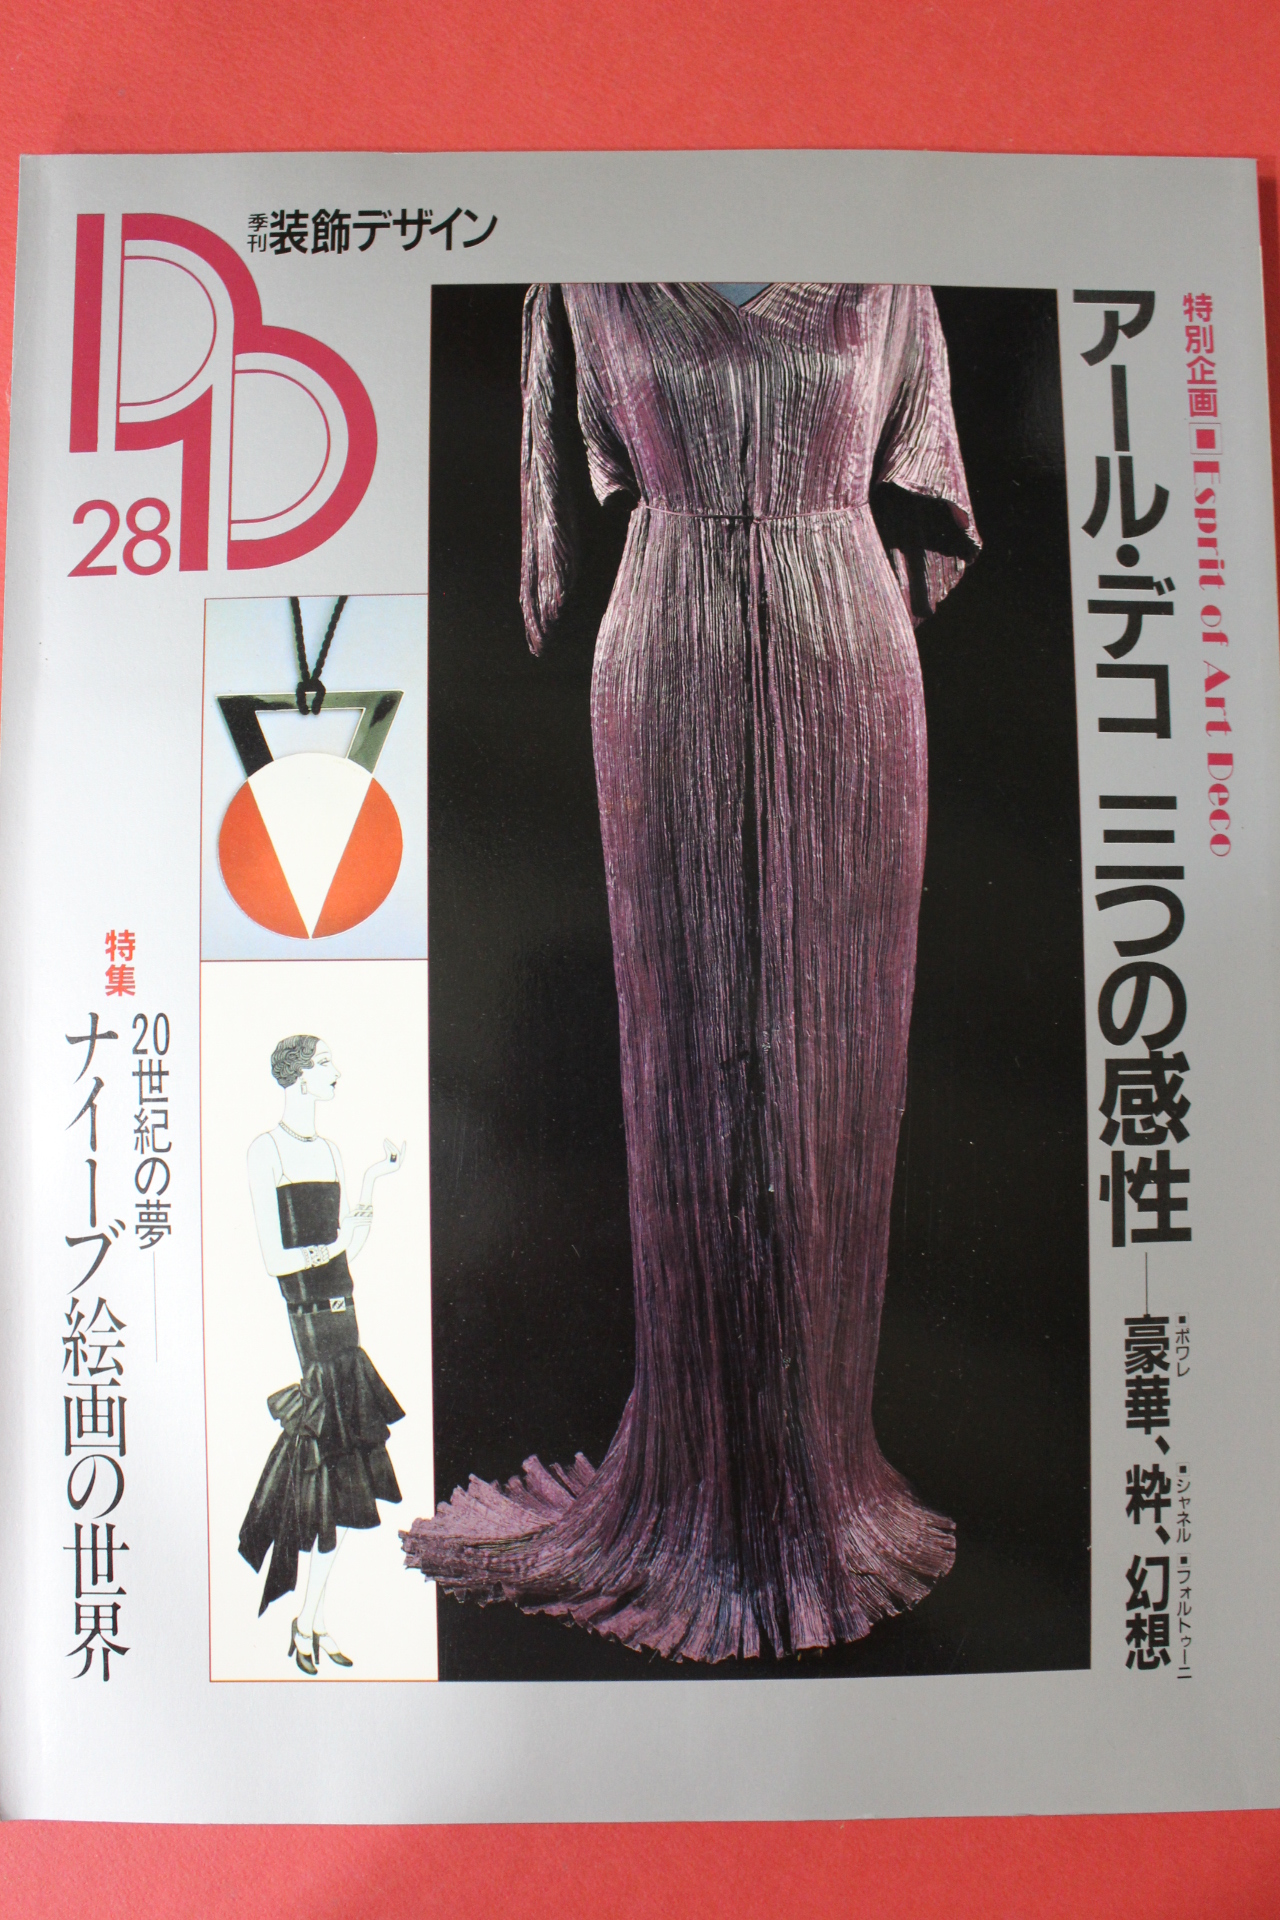 1989년 일본잡지